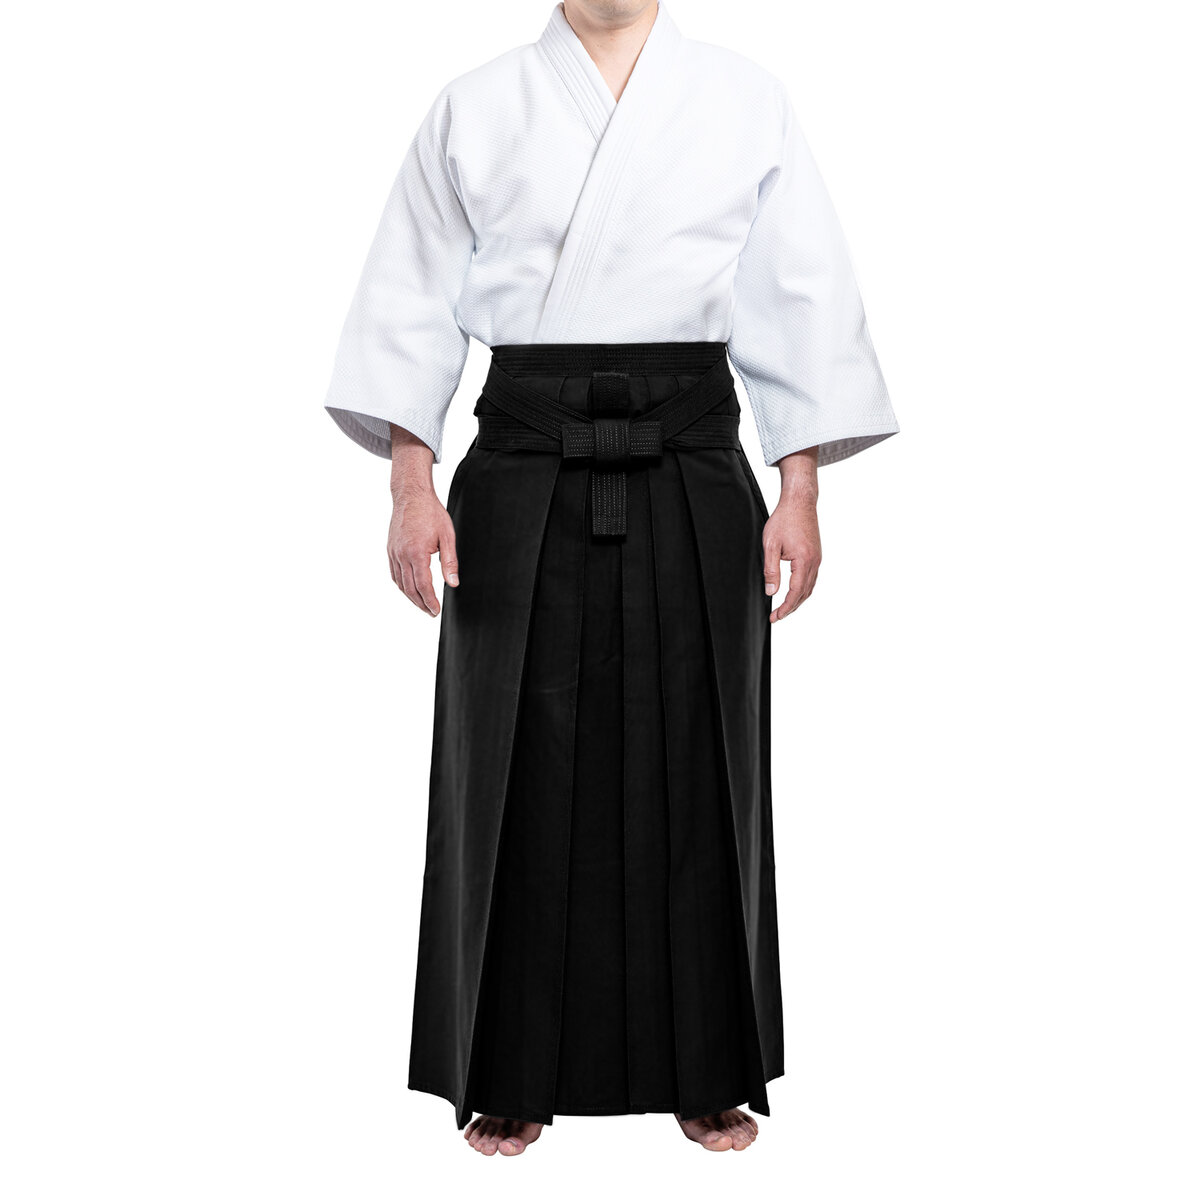 Hướng dẫn cách bảo quản đồng phục kendo